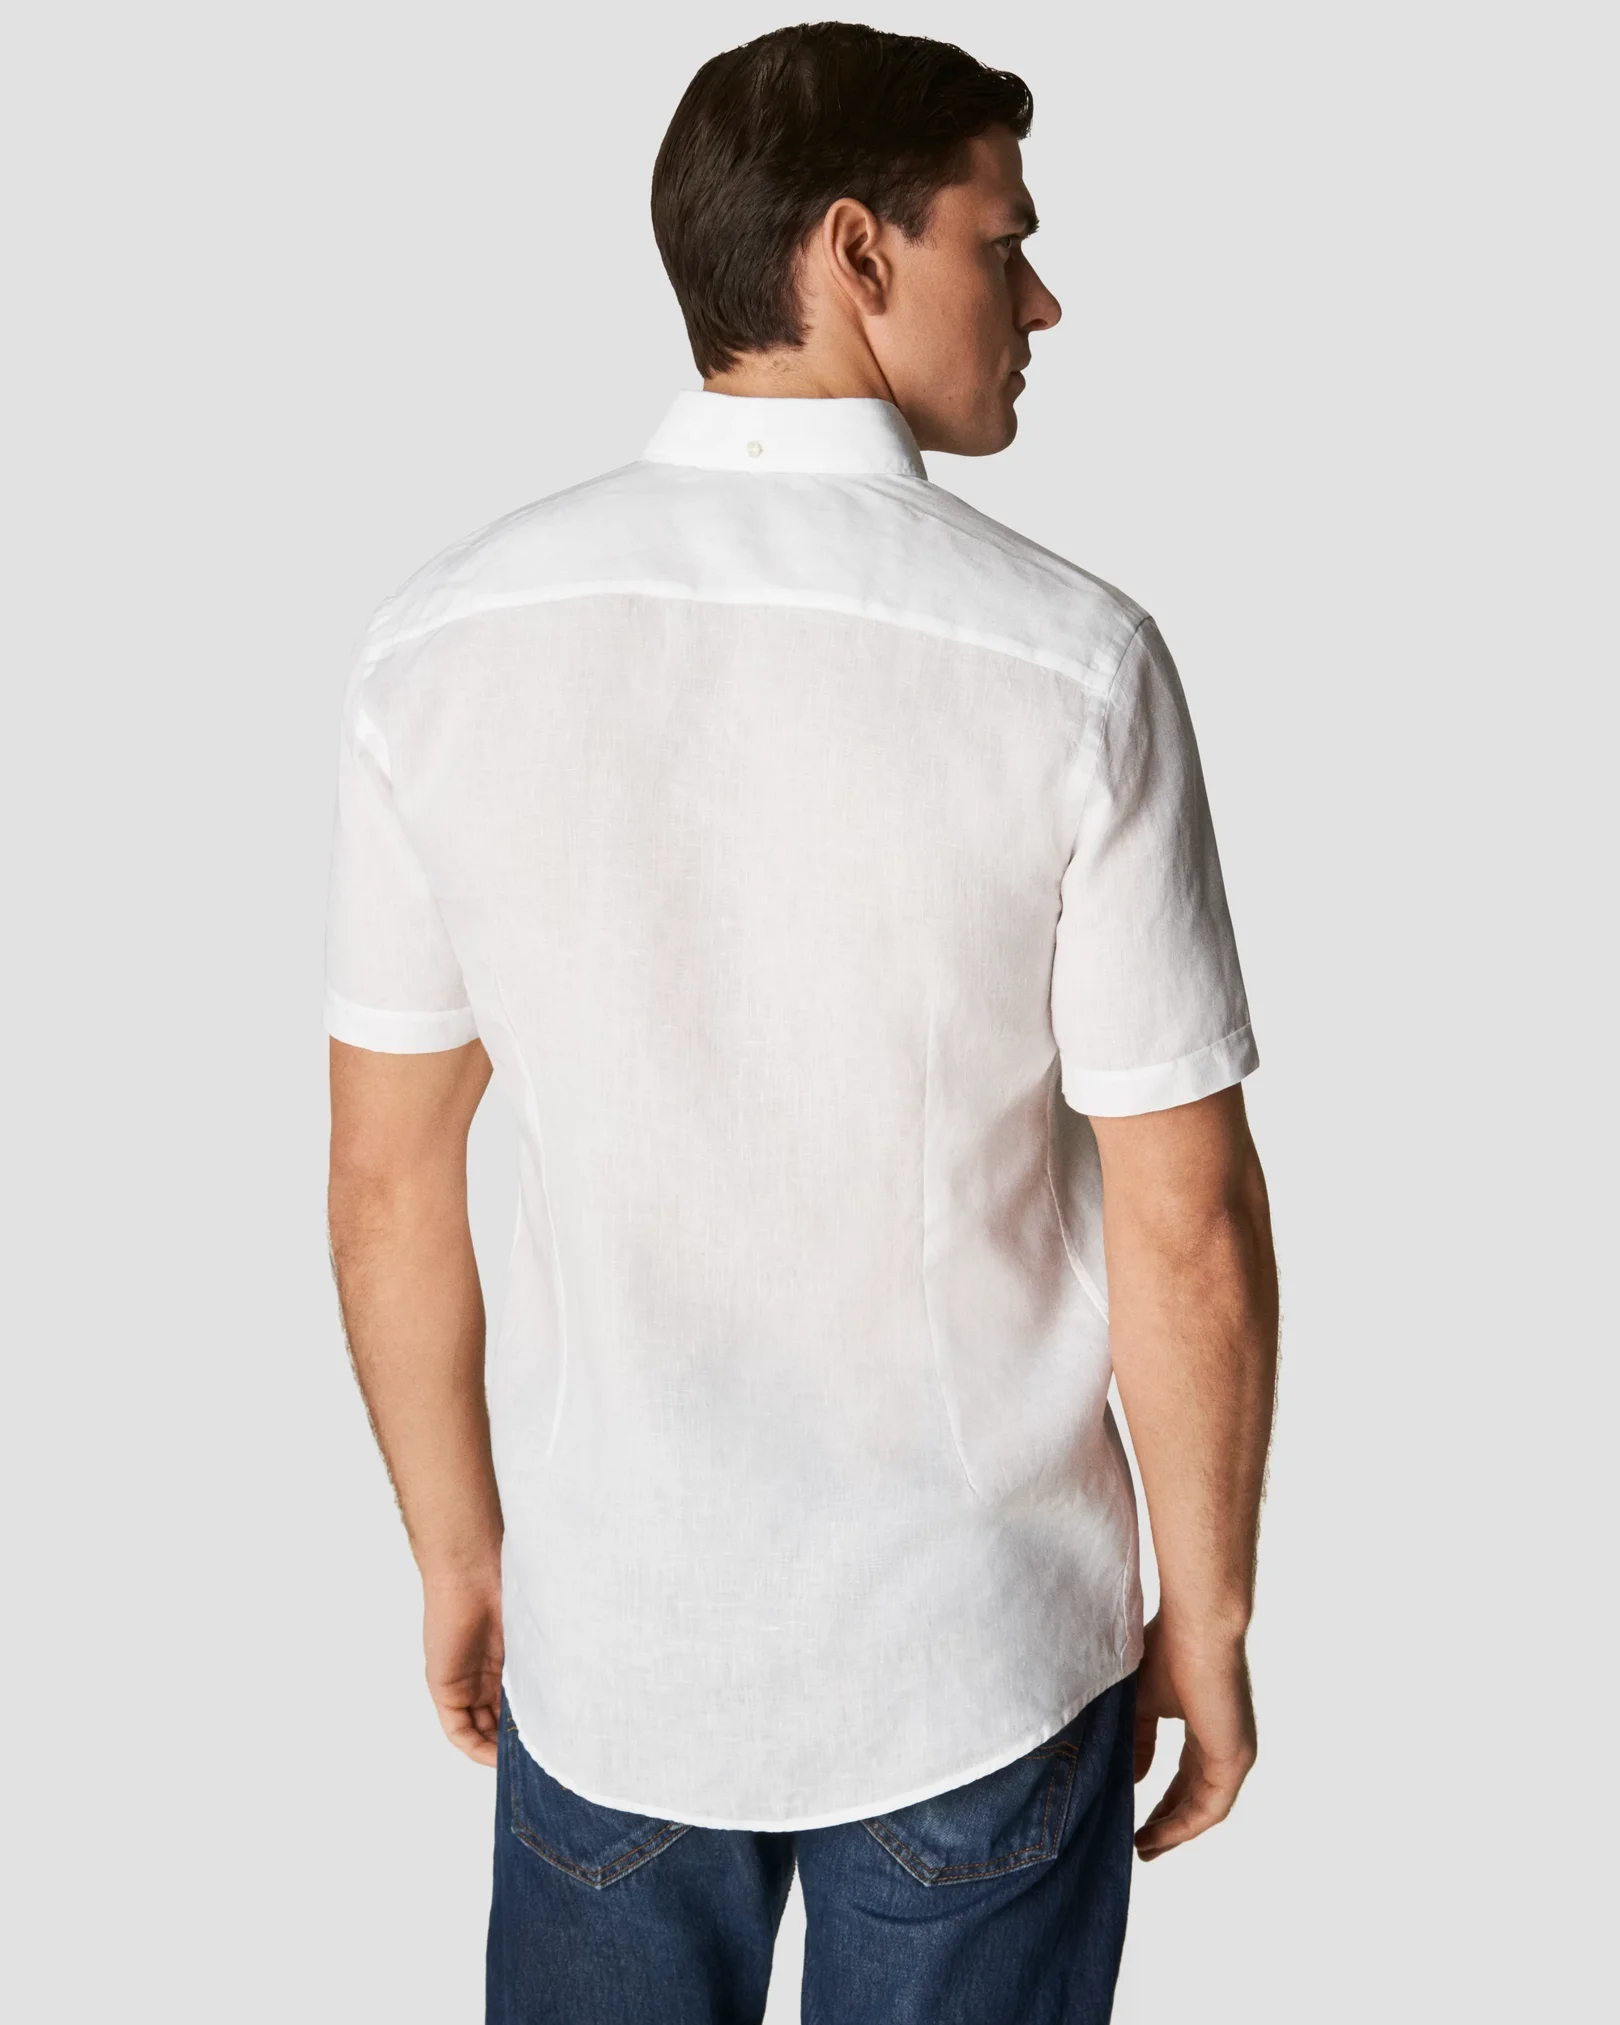 Eton - solid white linen short sleeve